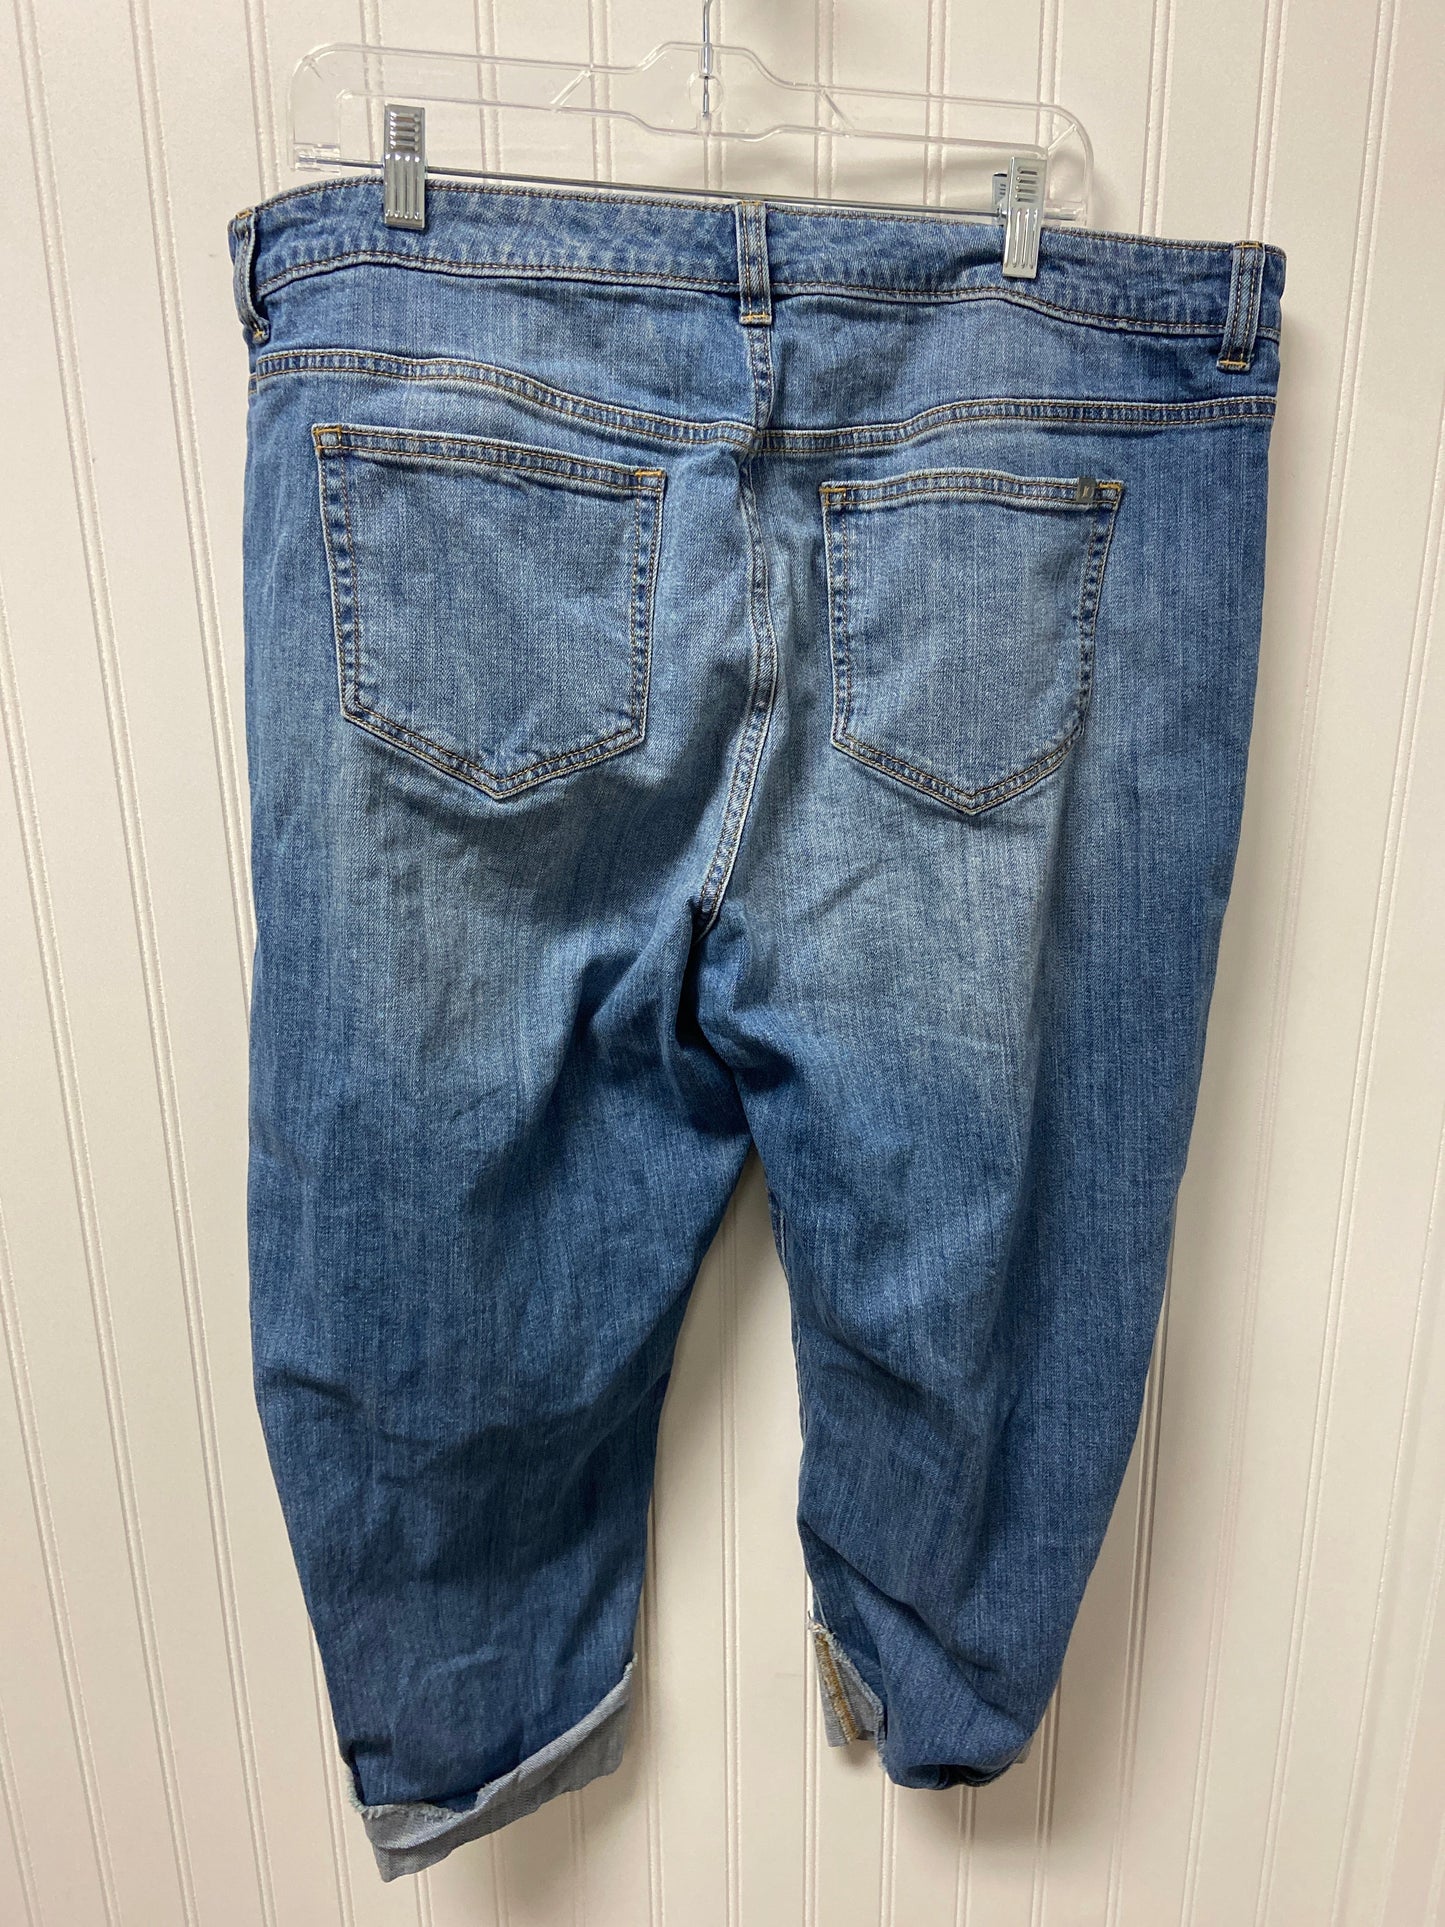 Blue Denim Jeans Cropped Jennifer Lauren, Size 18w